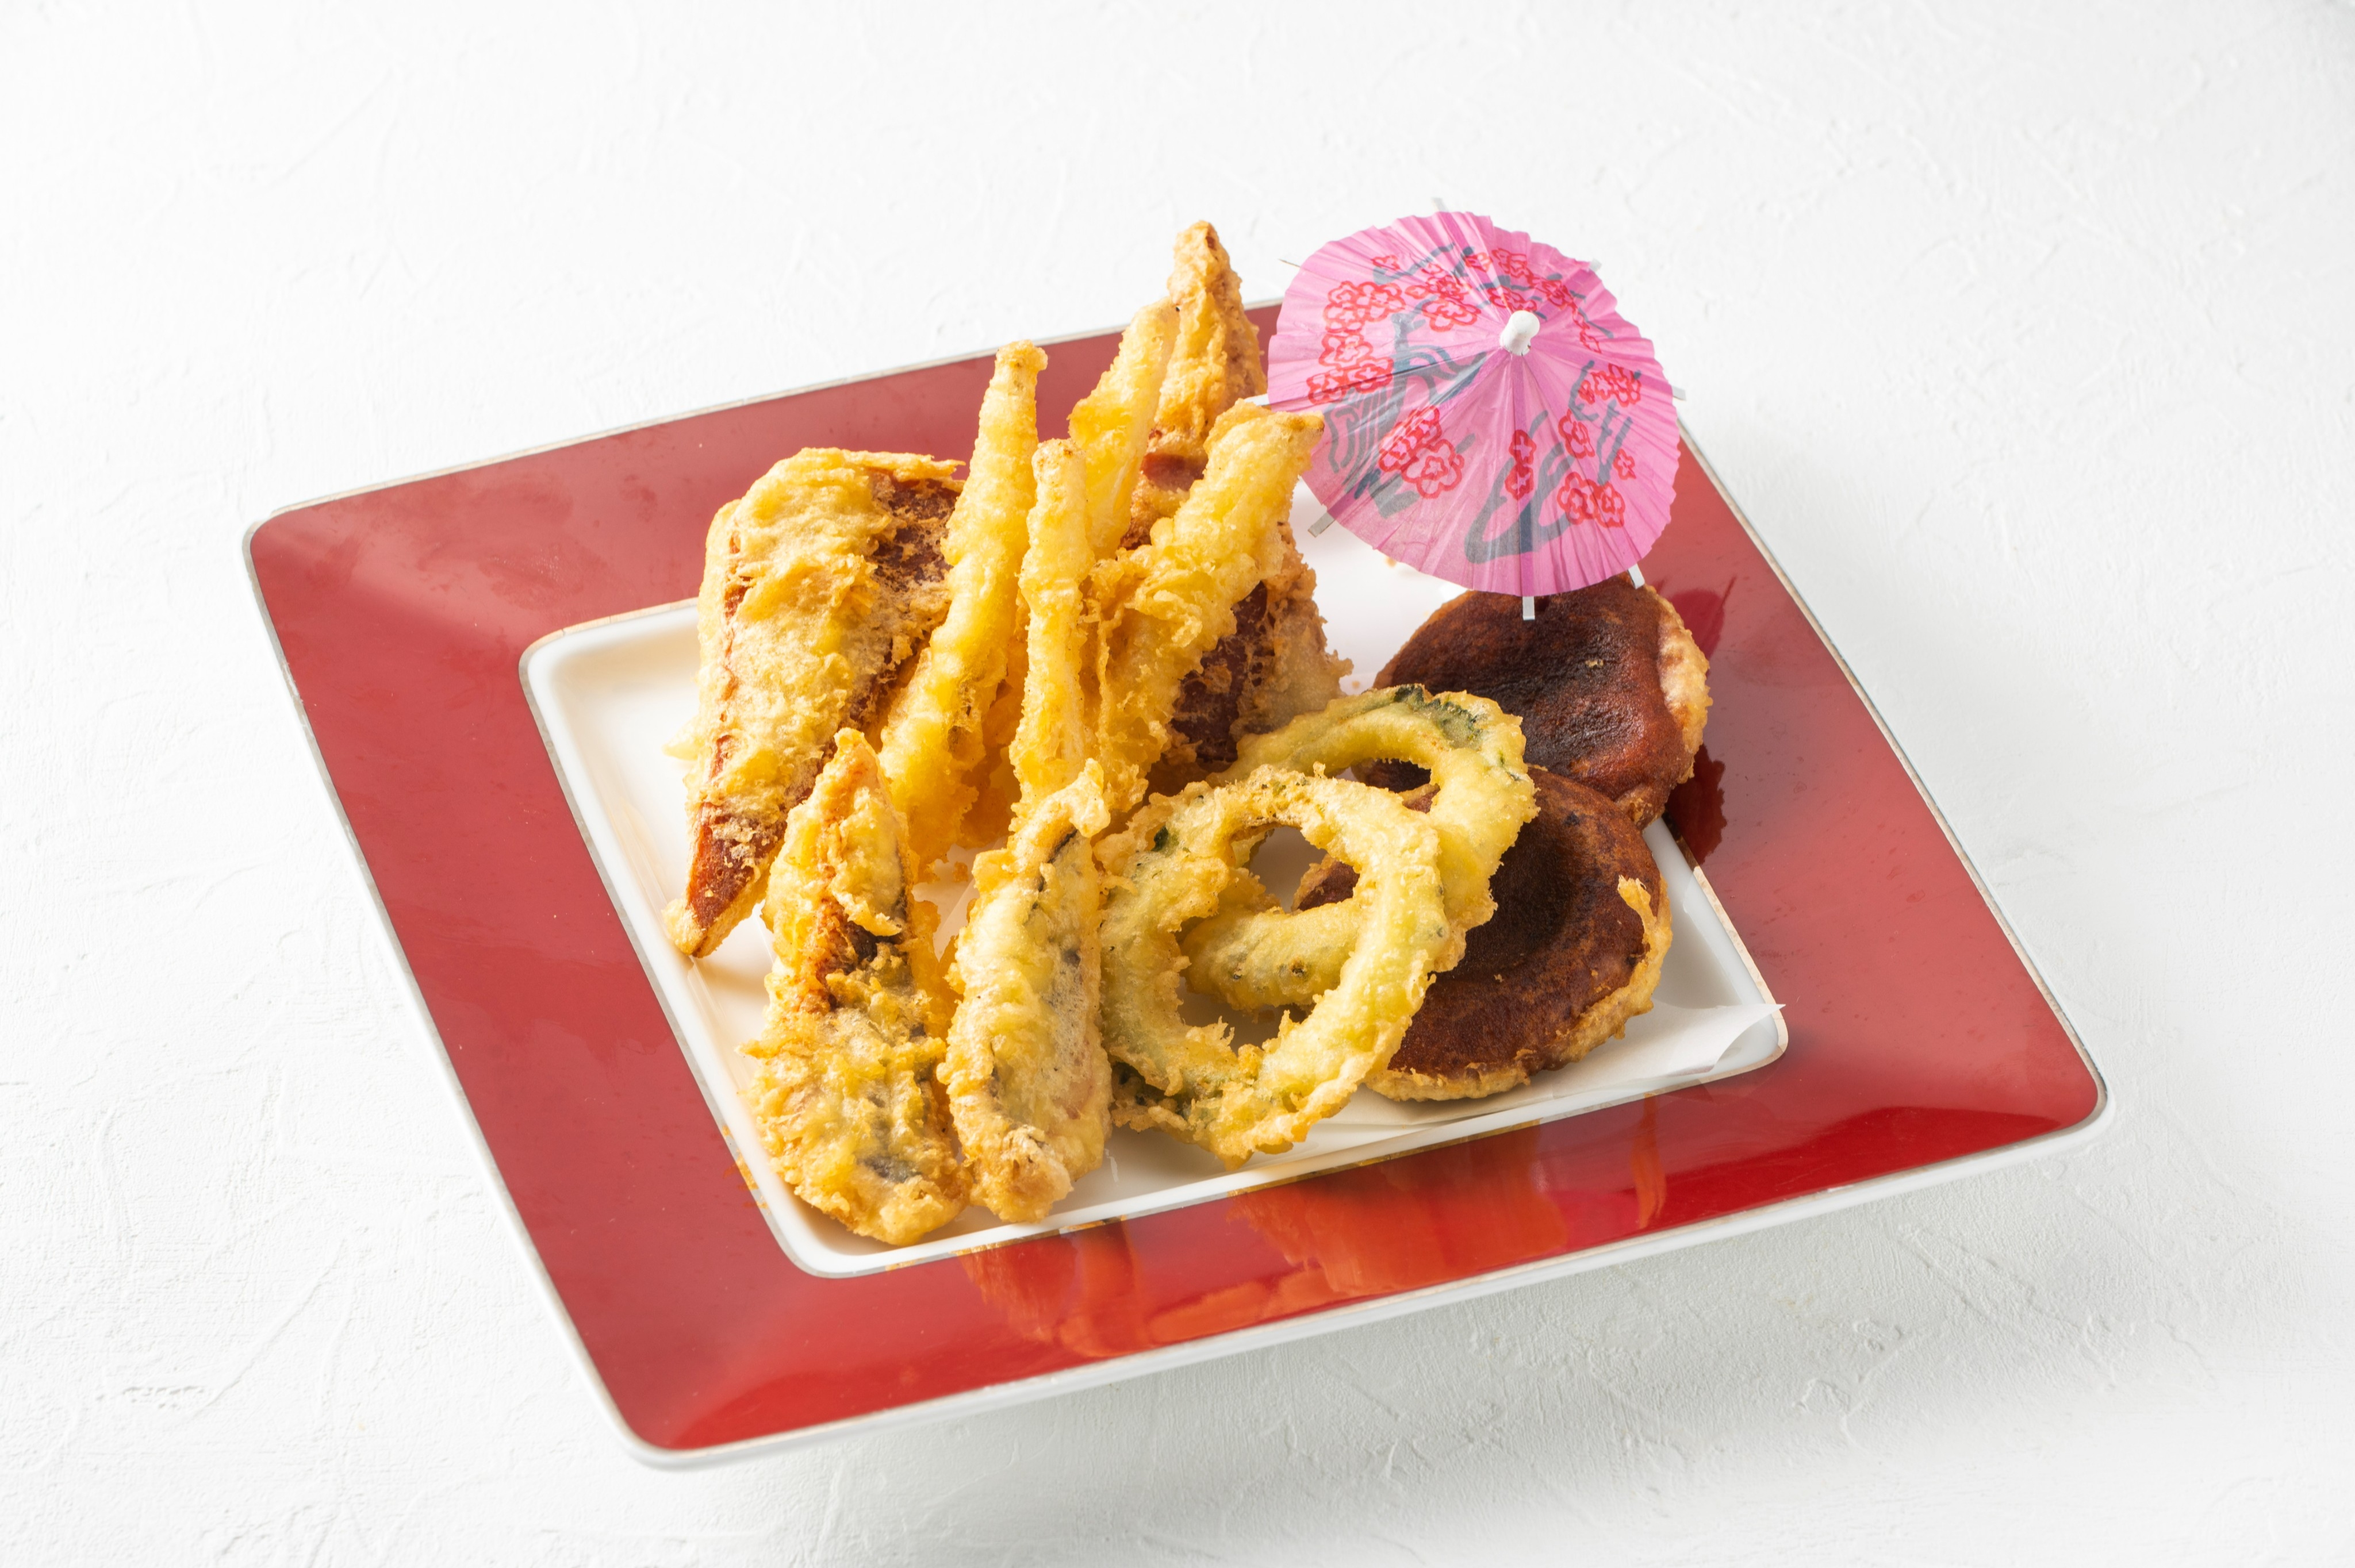 Enjoy Okinawan cuisine with carefully selected Okinawan ingredients. We recommend Shabu-Shabu Set Menu.